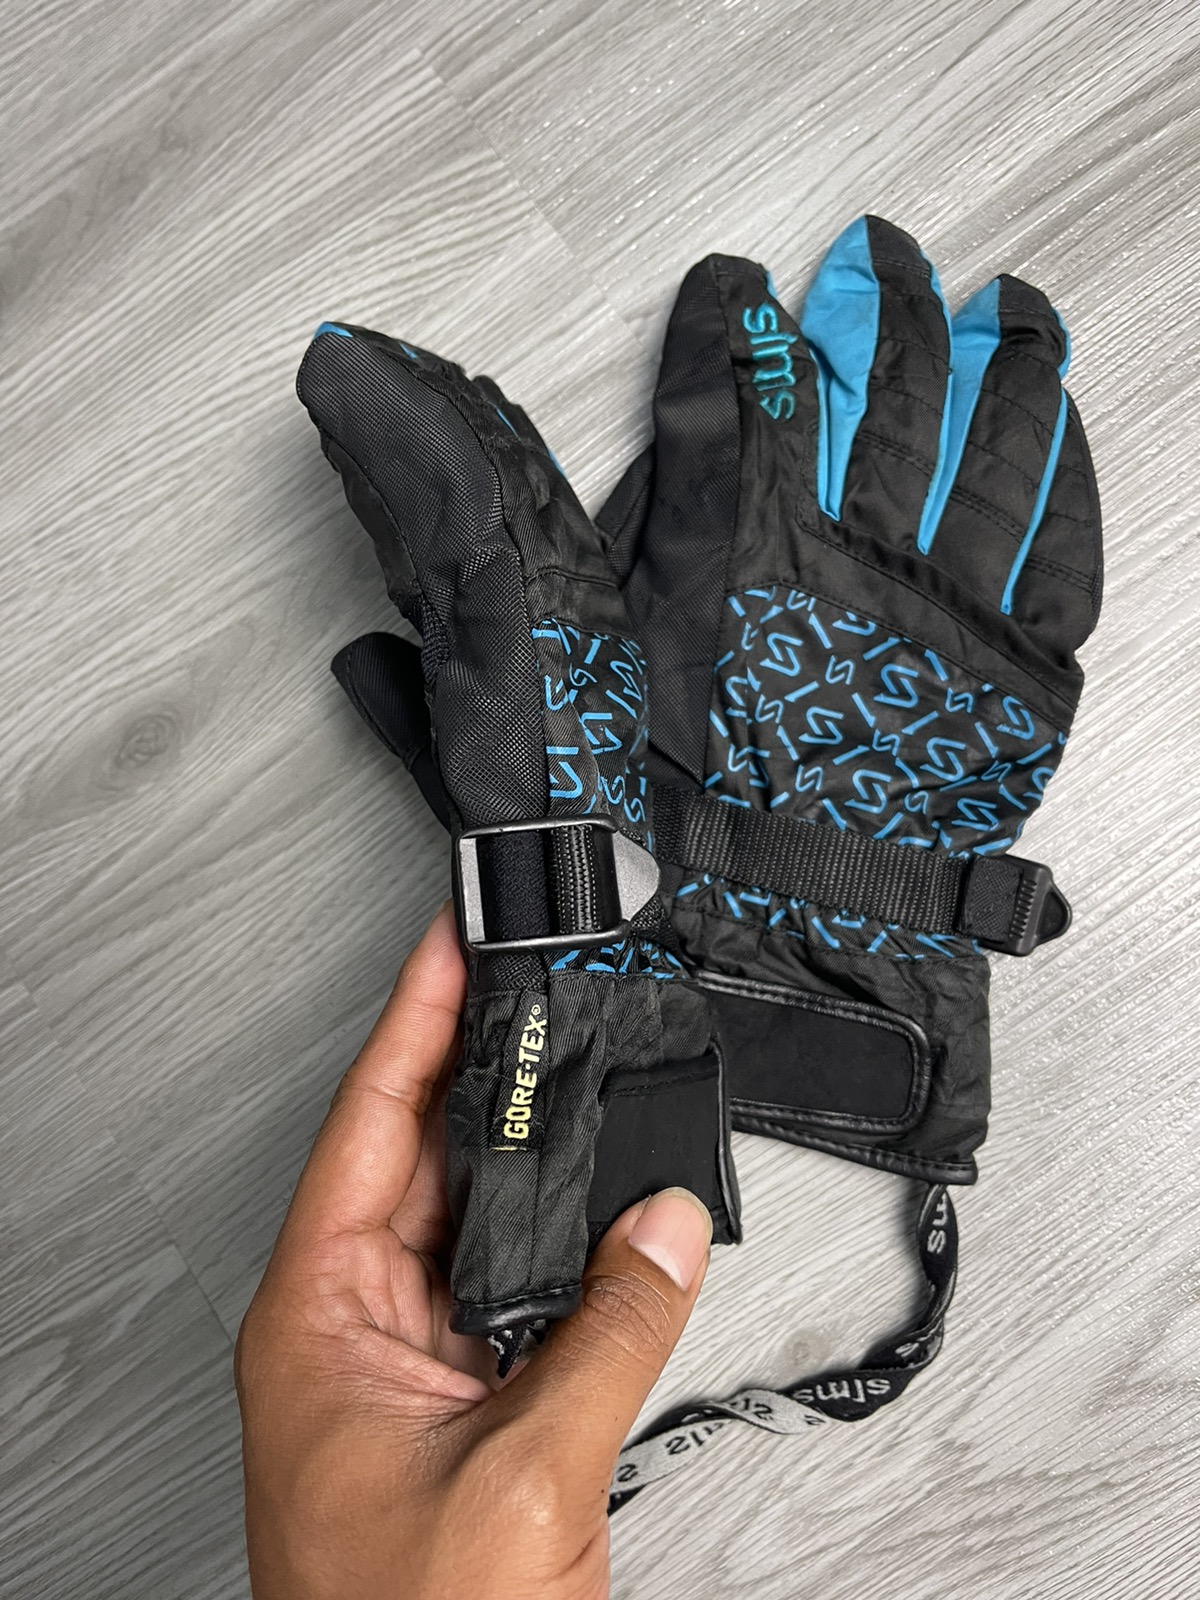 Goretex - Sims GoreTex Snow Glove medium size - 3